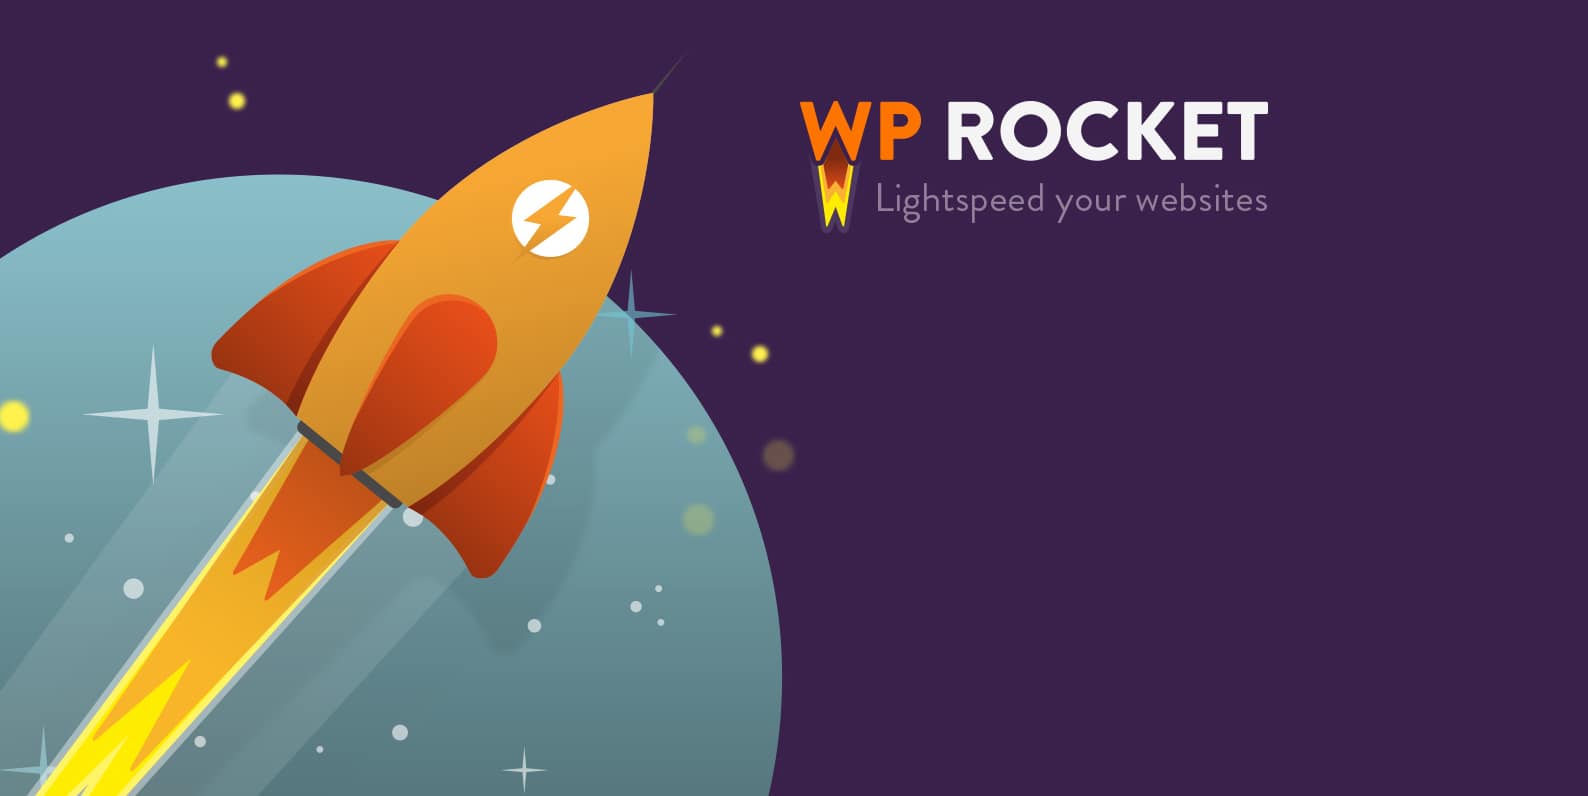 加速插件 WP Rocket v3.5.5.1 专业版 破解 中文汉化 wordpress插件【已更新】 